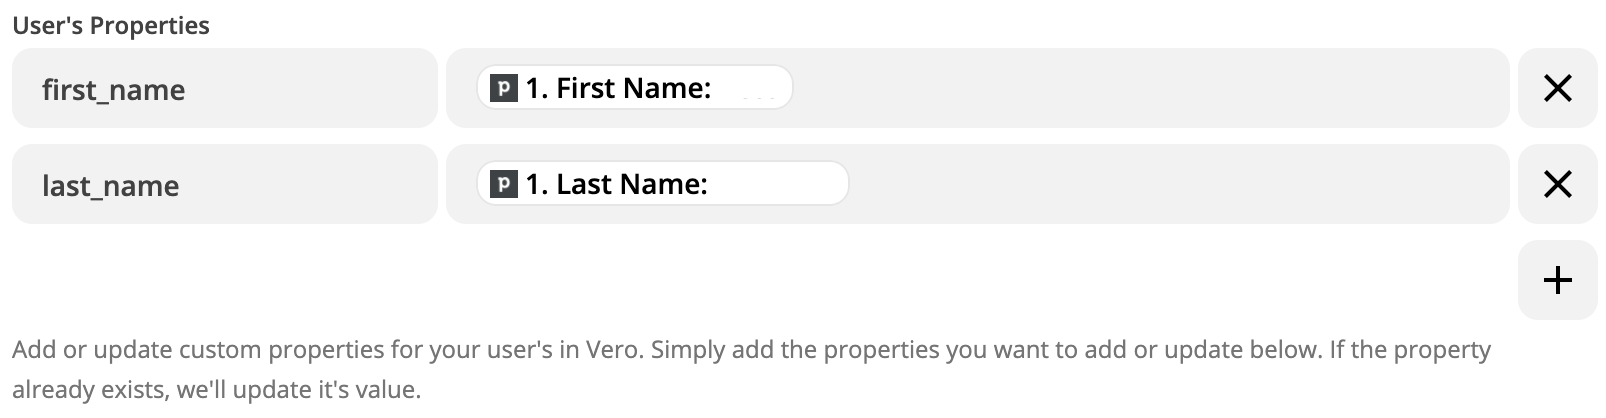 Vero User Properties in Zapier